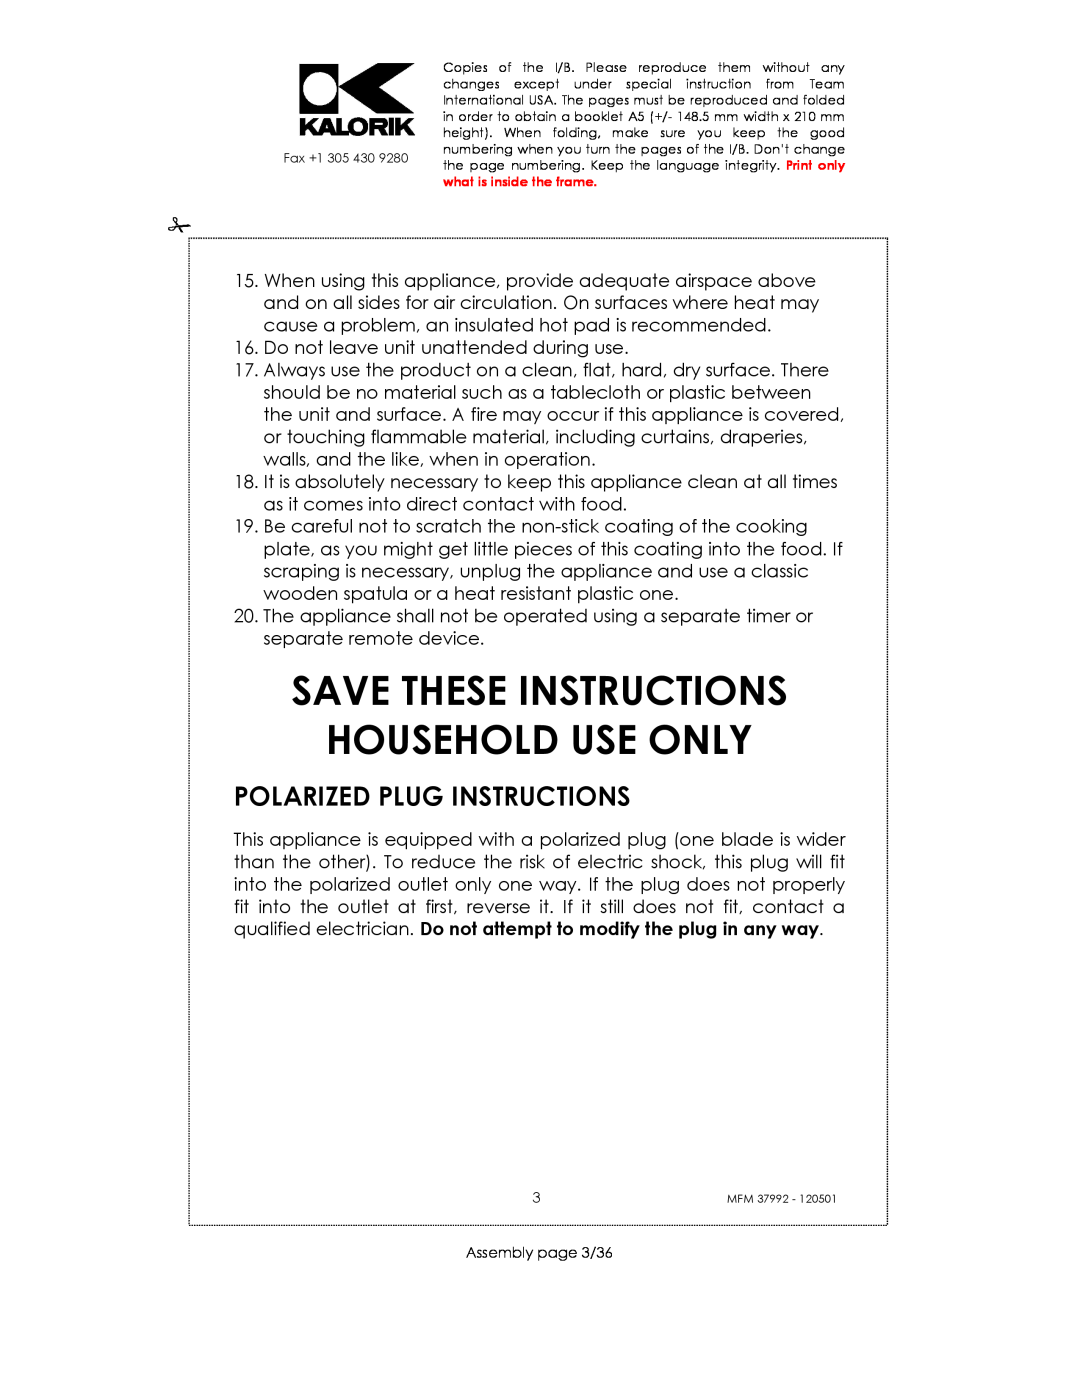 Kalorik MFM 37992 manual Save These Instructions Household Use Only, Polarized Plug Instructions 